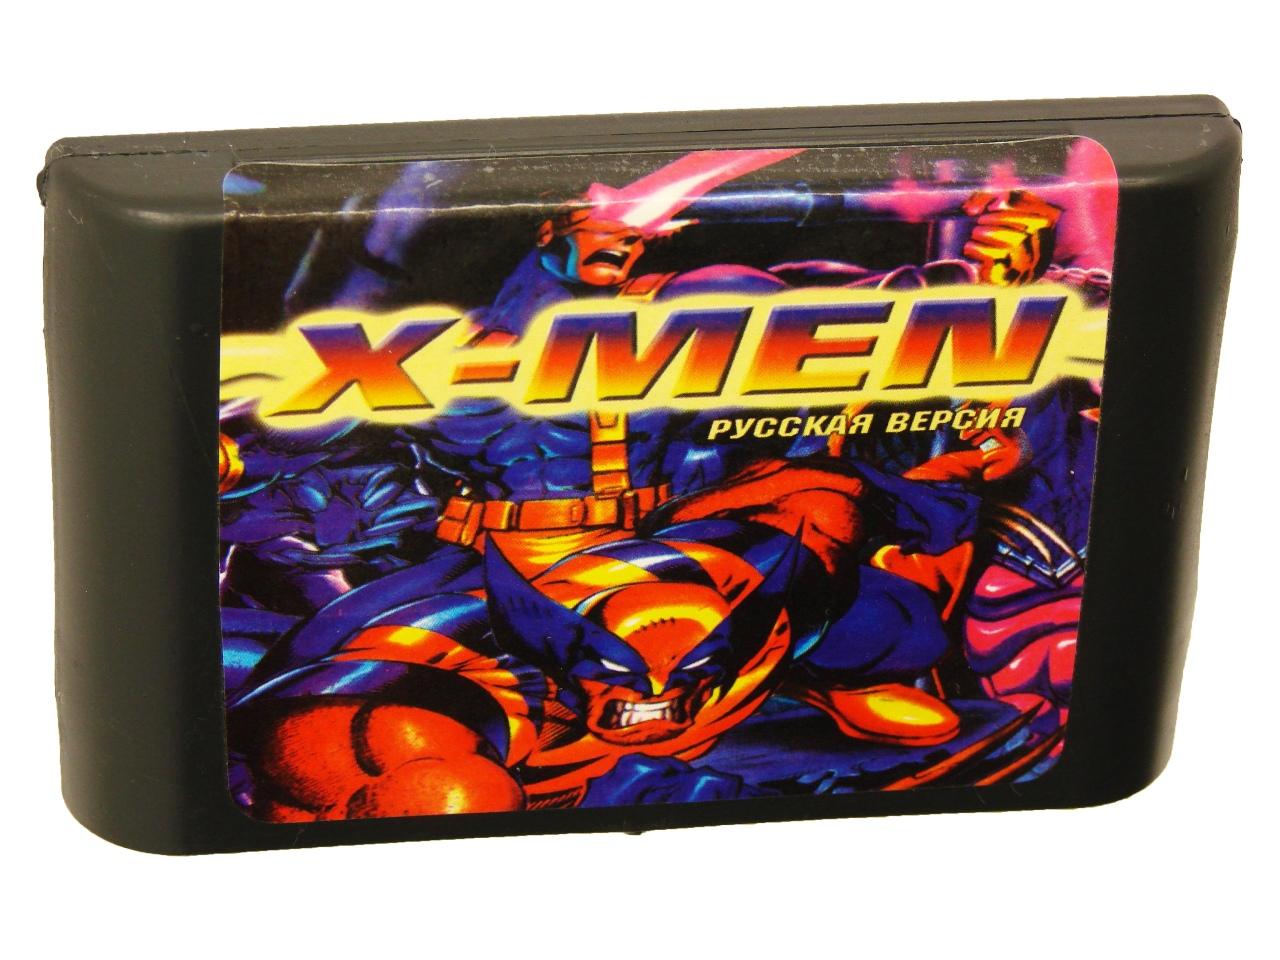 Картридж для Sega X-Men (Sega)